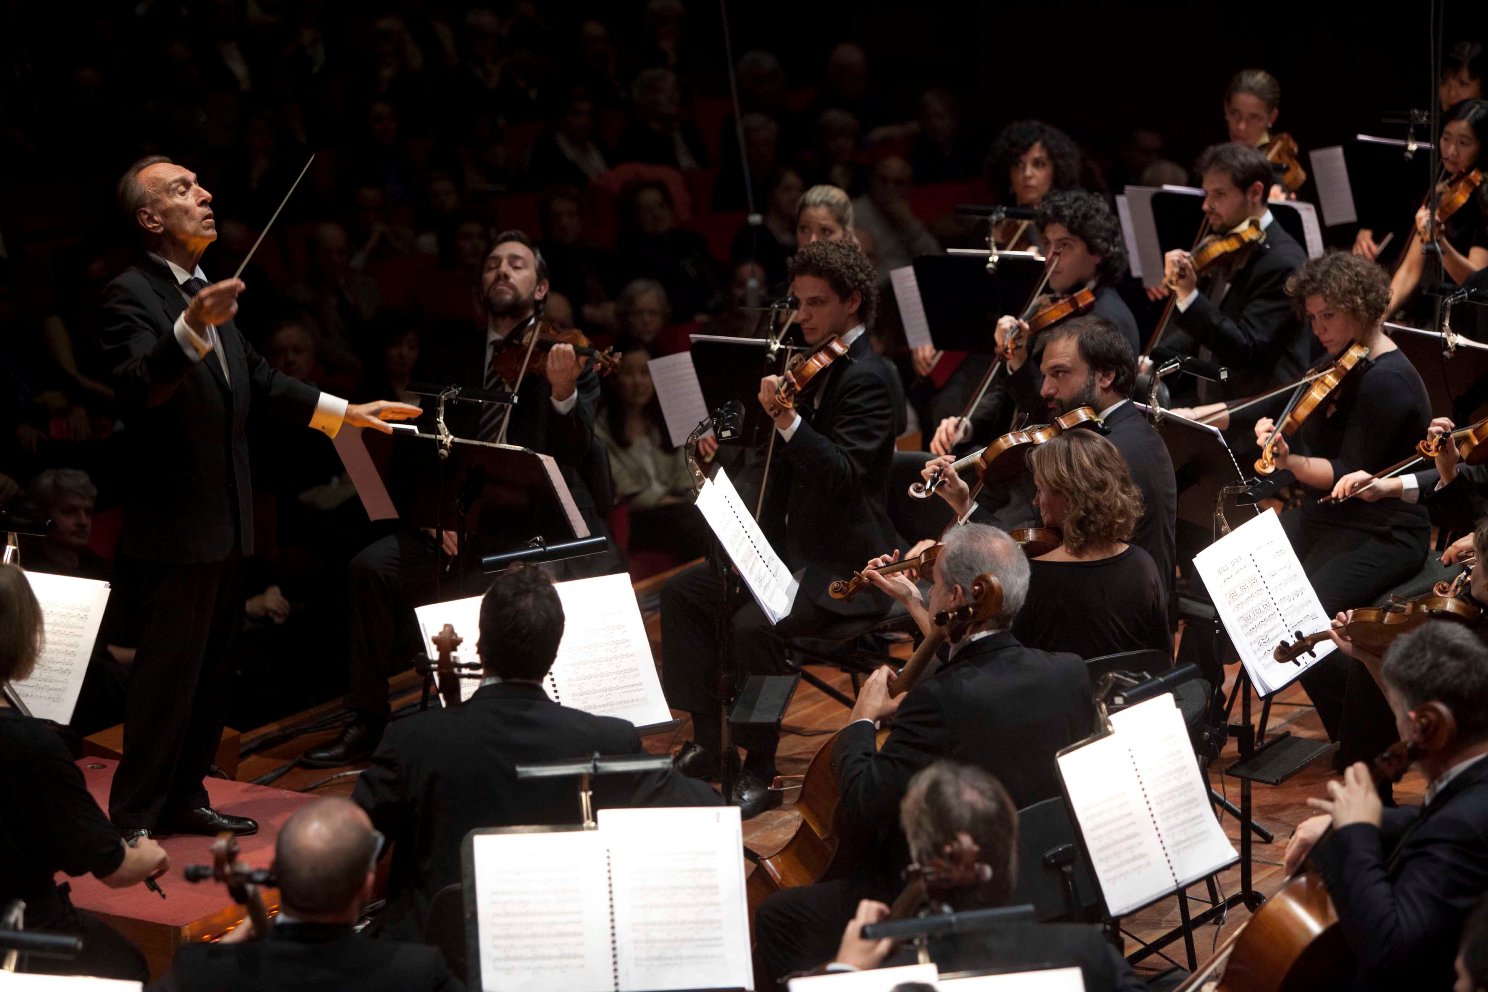 Claudio Abbado conducting the combined forces of the Accademia Nazionale di Santa Cecilia and the Orchestra Mozart in Rome